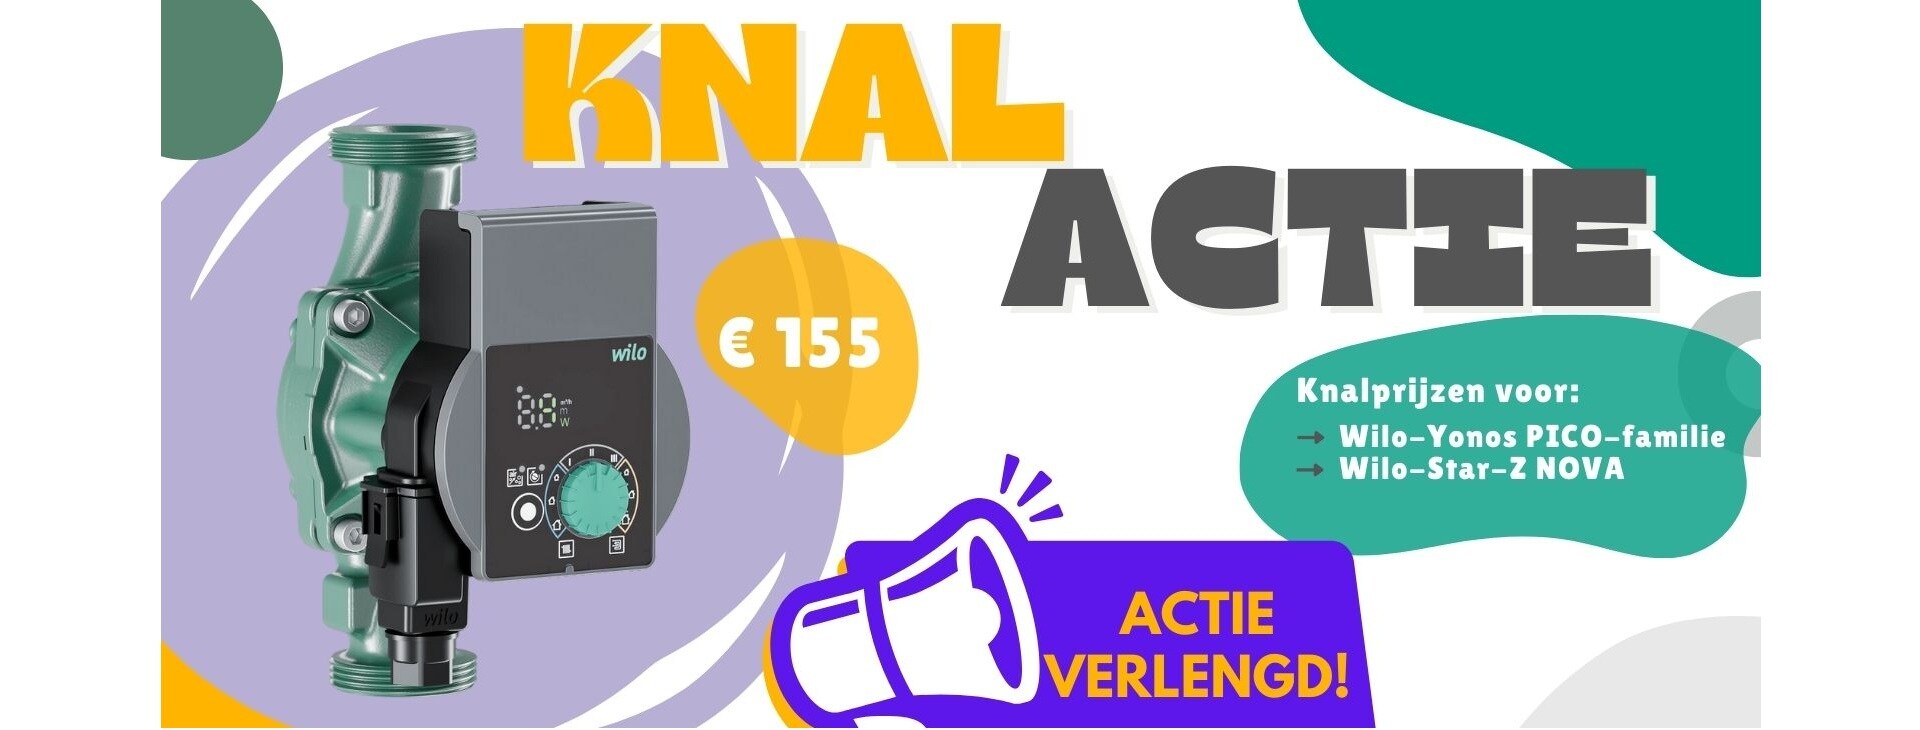 Knal actie banner homepage